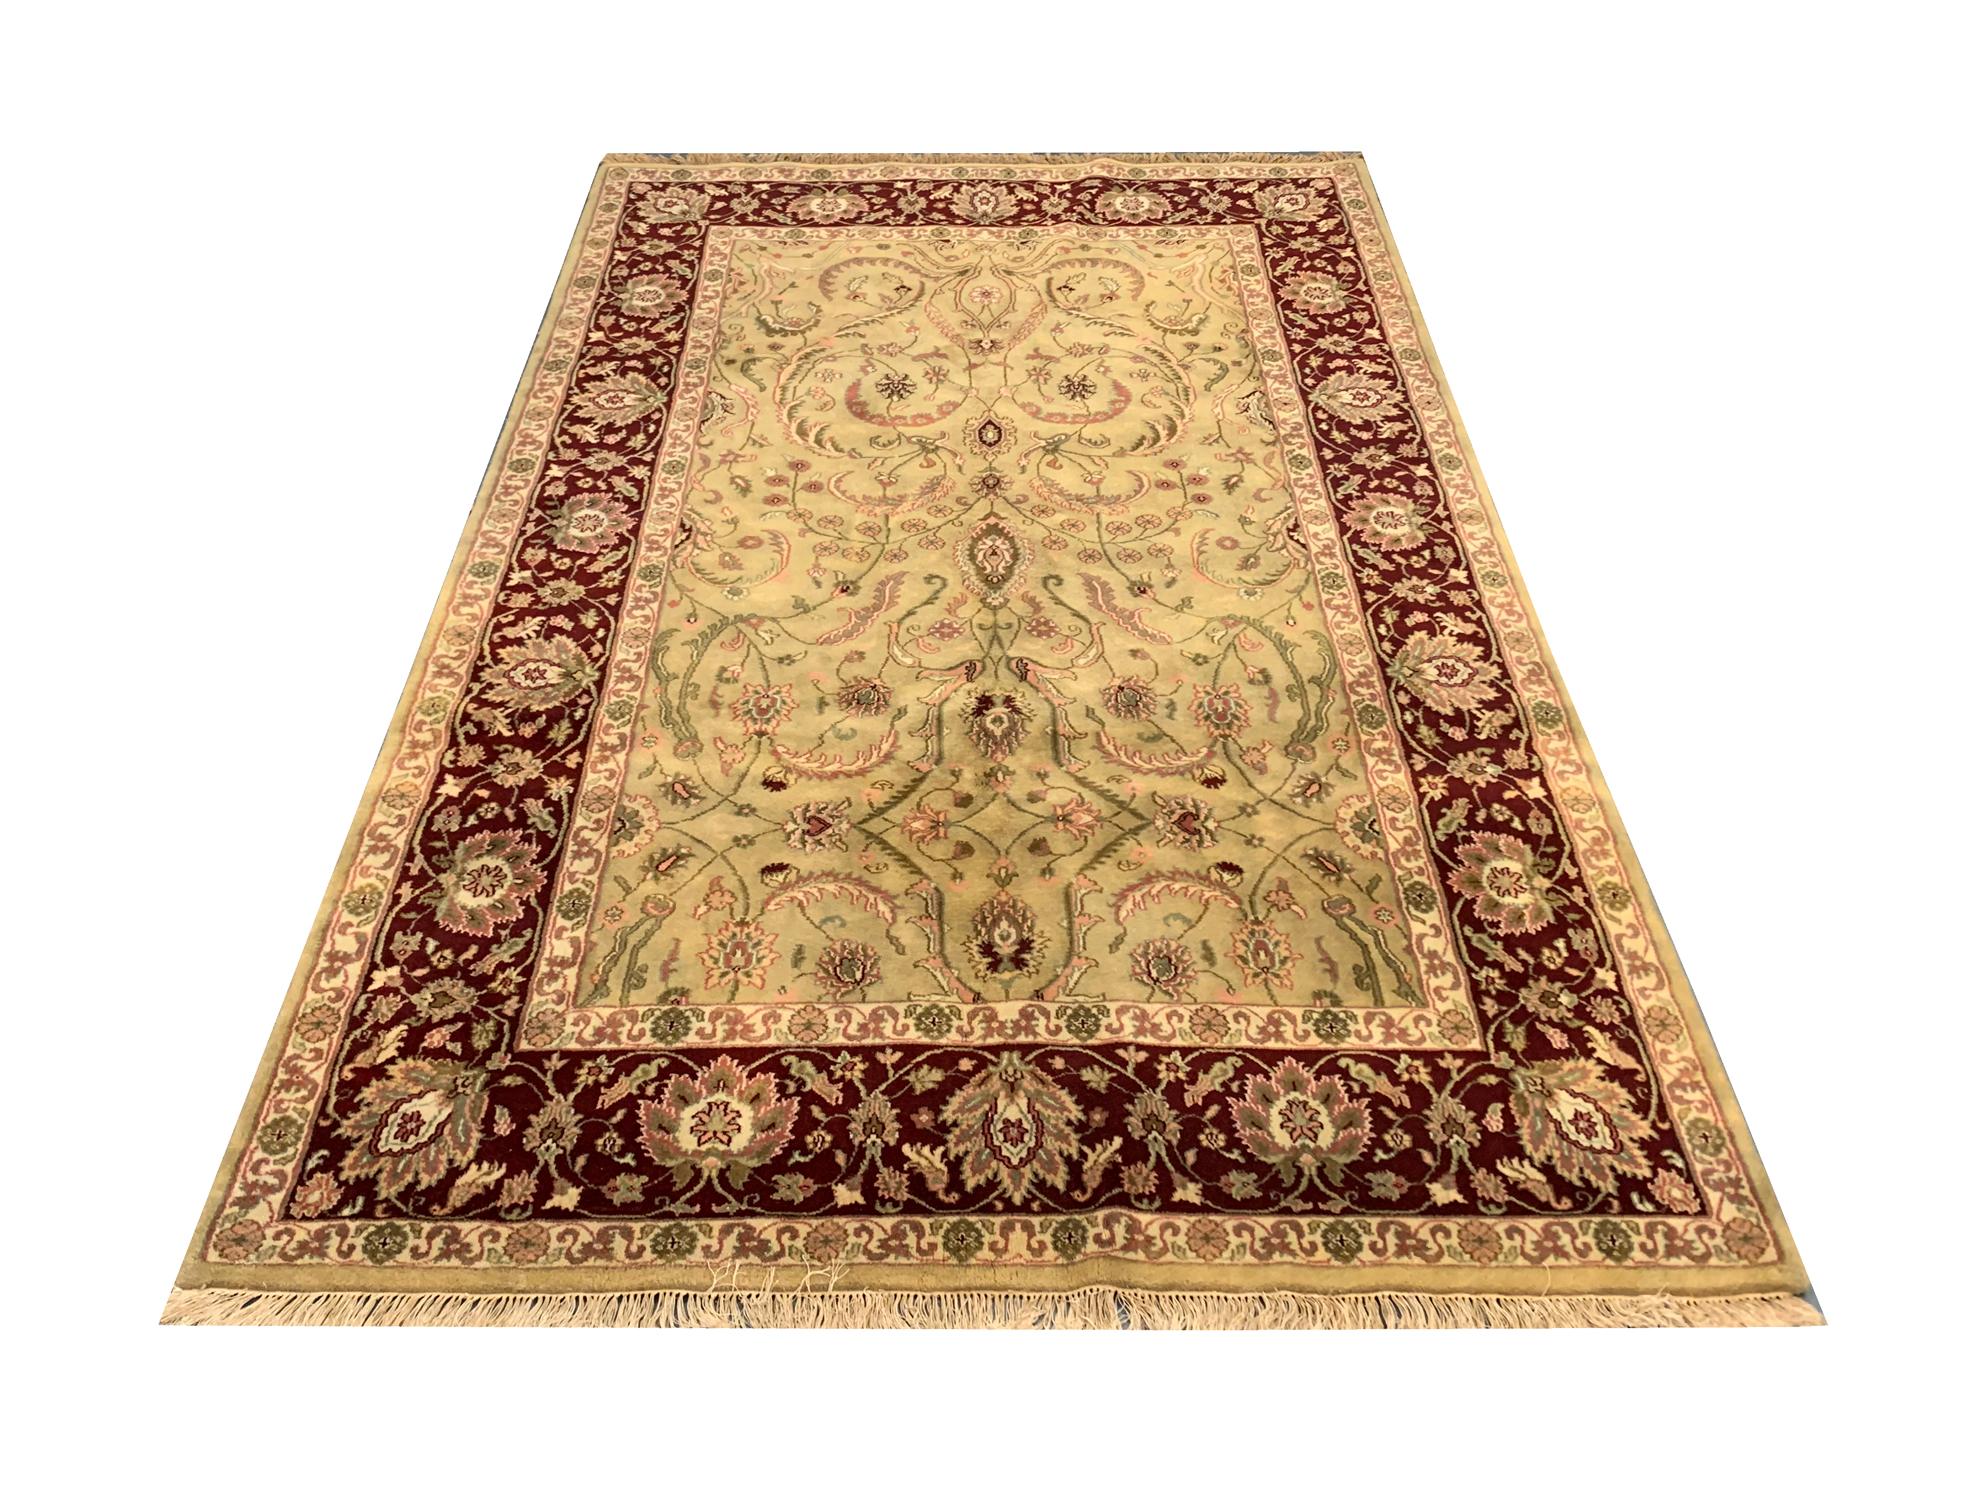 Dieser Orientteppich aus feiner Wolle ist ein alter Ziegler-Teppich, der Ende des 20. Jahrhunderts, um 1990, in Indien handgeknüpft wurde. Das zentrale Design zeigt ein elegantes symmetrisches Muster mit zarten Blumenmustern, die in dezenten